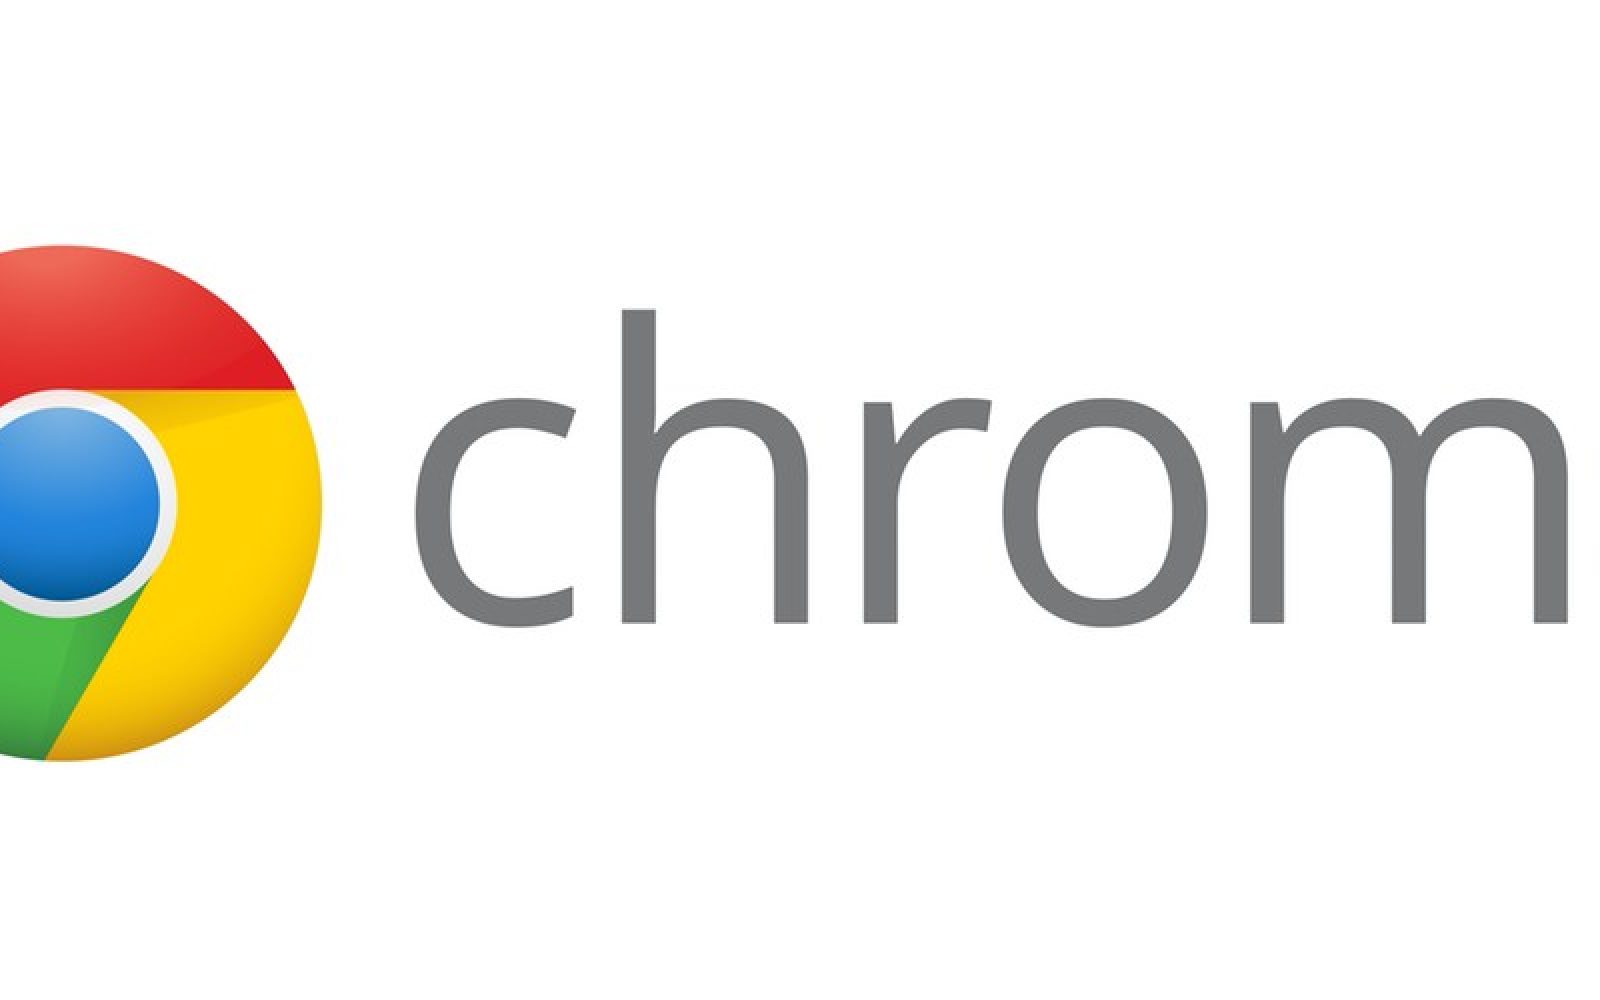 Google chrome for mac 10.6.8